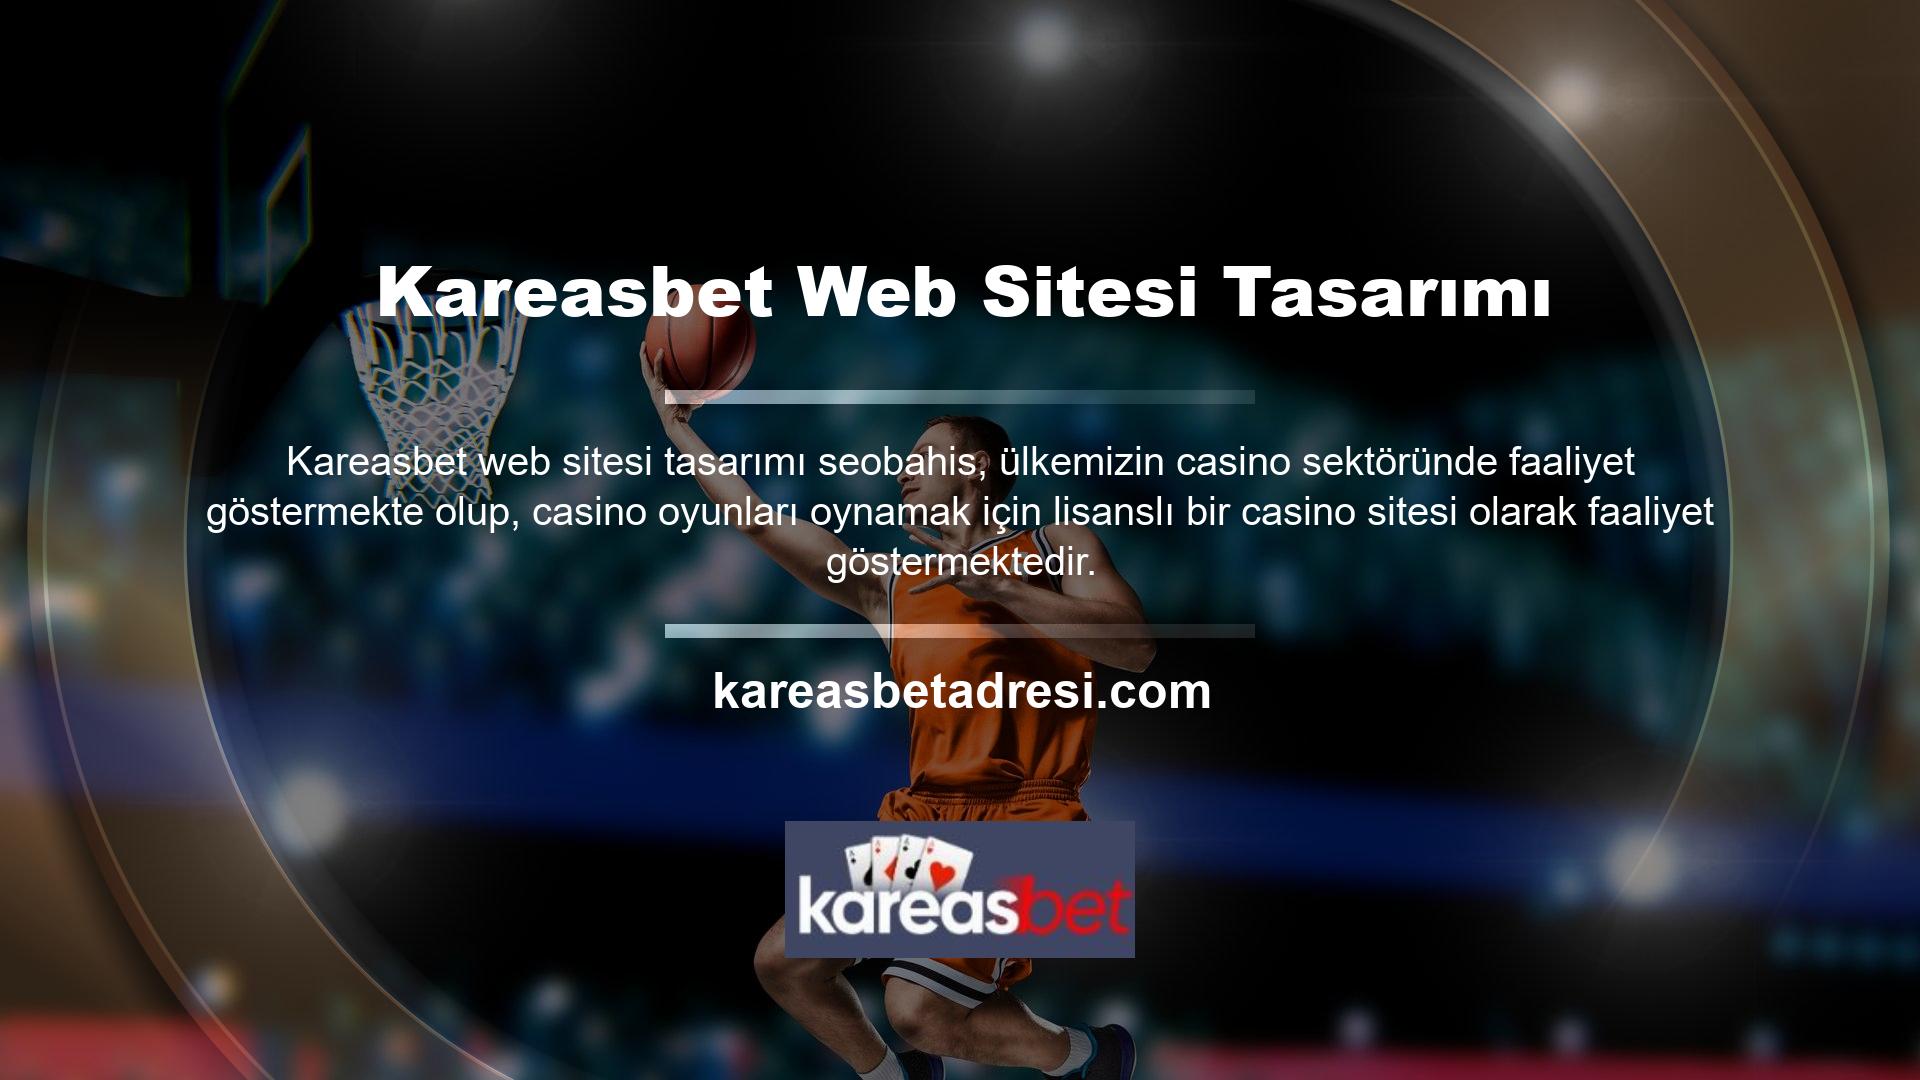 Kareasbet Web Sitesi Tasarımı ana sayfasındaki "Hakkımızda" sayfasına tıklayarak lisans bilgilerinize erişebilir ve doğruluğunu doğrulayabilirsiniz